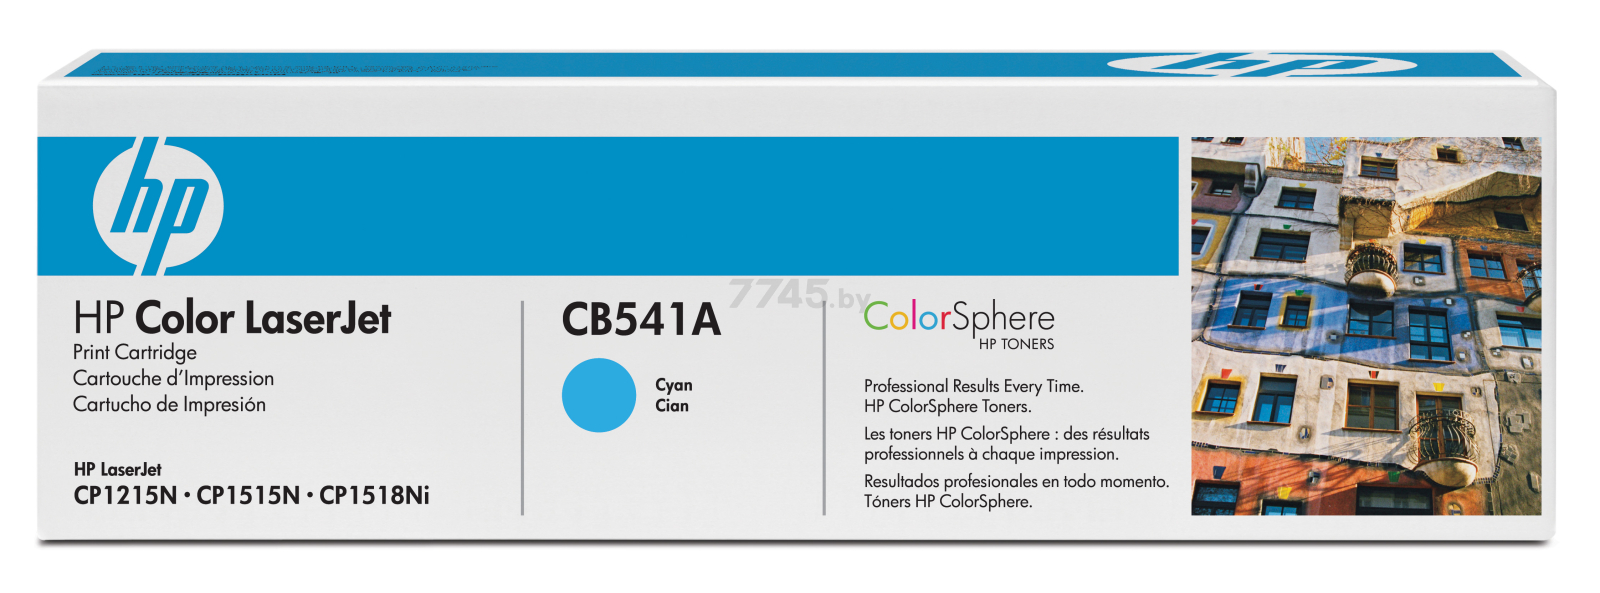 Картридж для принтера лазерный HP 125A голубой (CB541A)